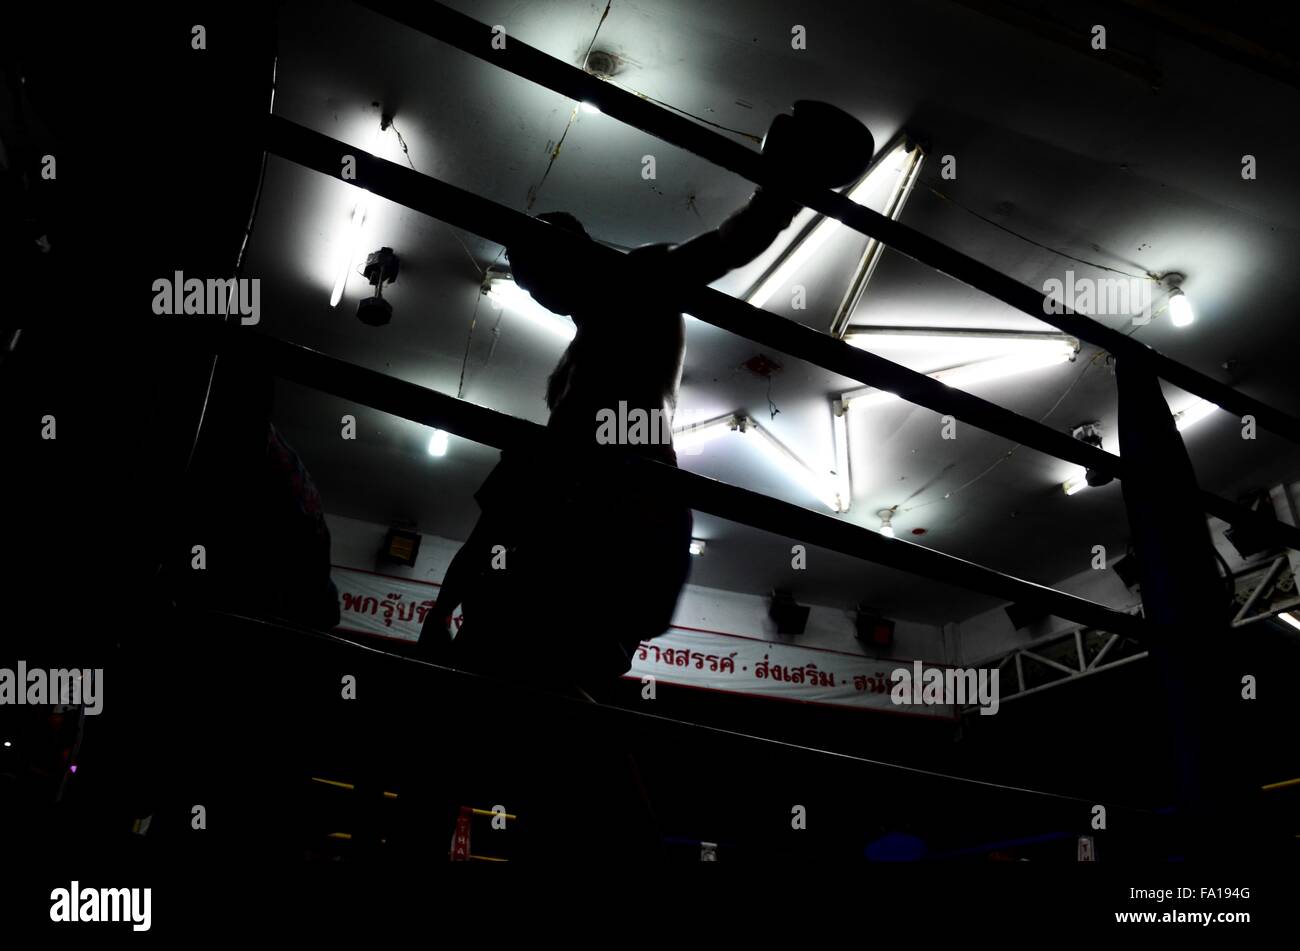 Mury Thai boxing stadium Chiang Mai Stock Photo